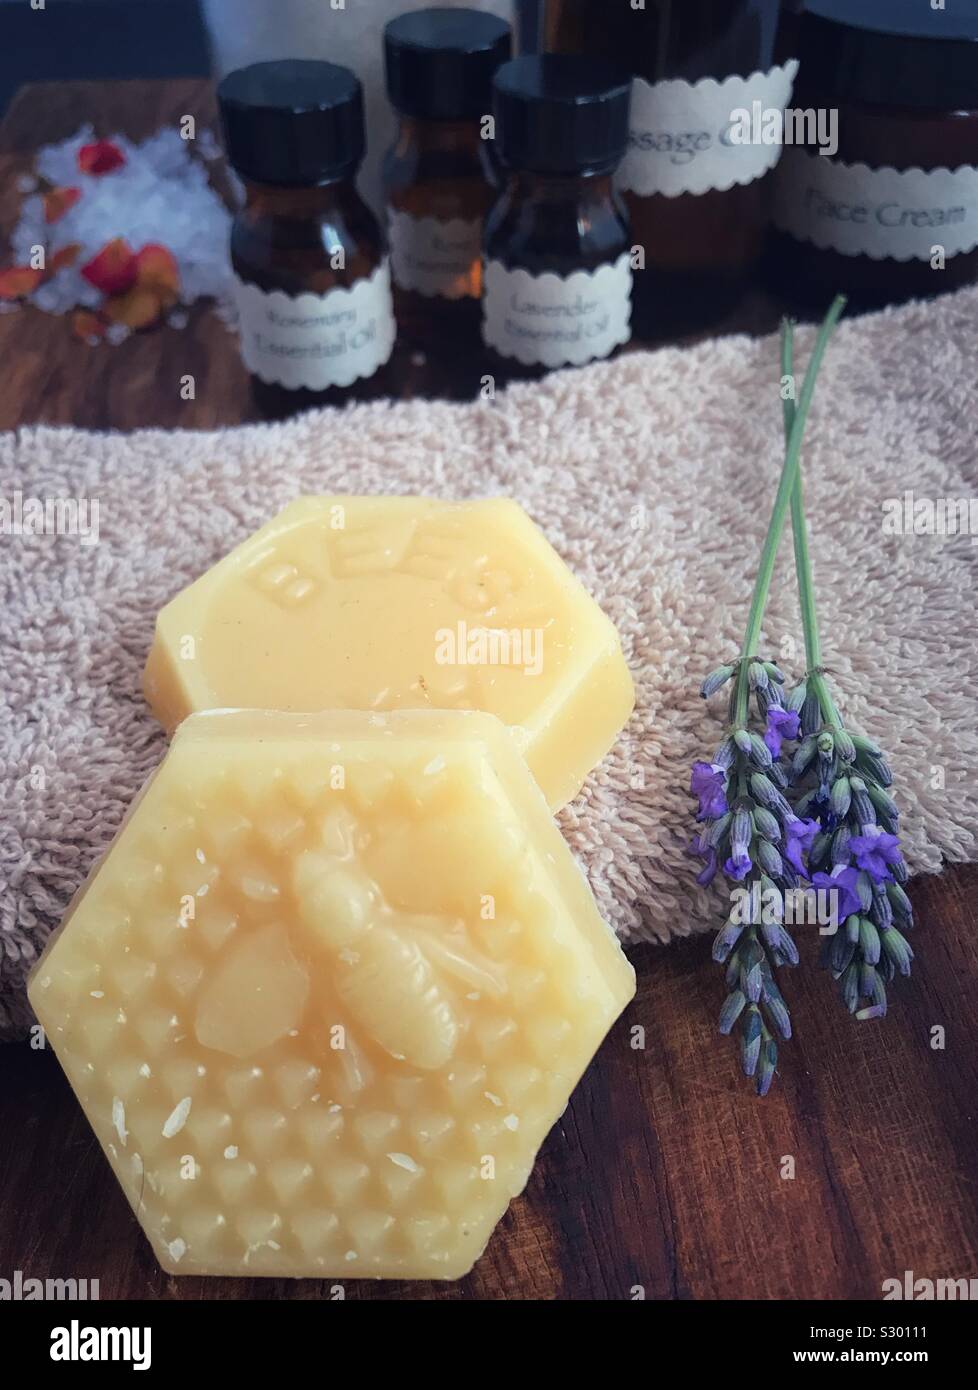 Bienenwachs und Lavendel mit generischen Aromatherapie Flaschen im Hintergrund. Stockfoto